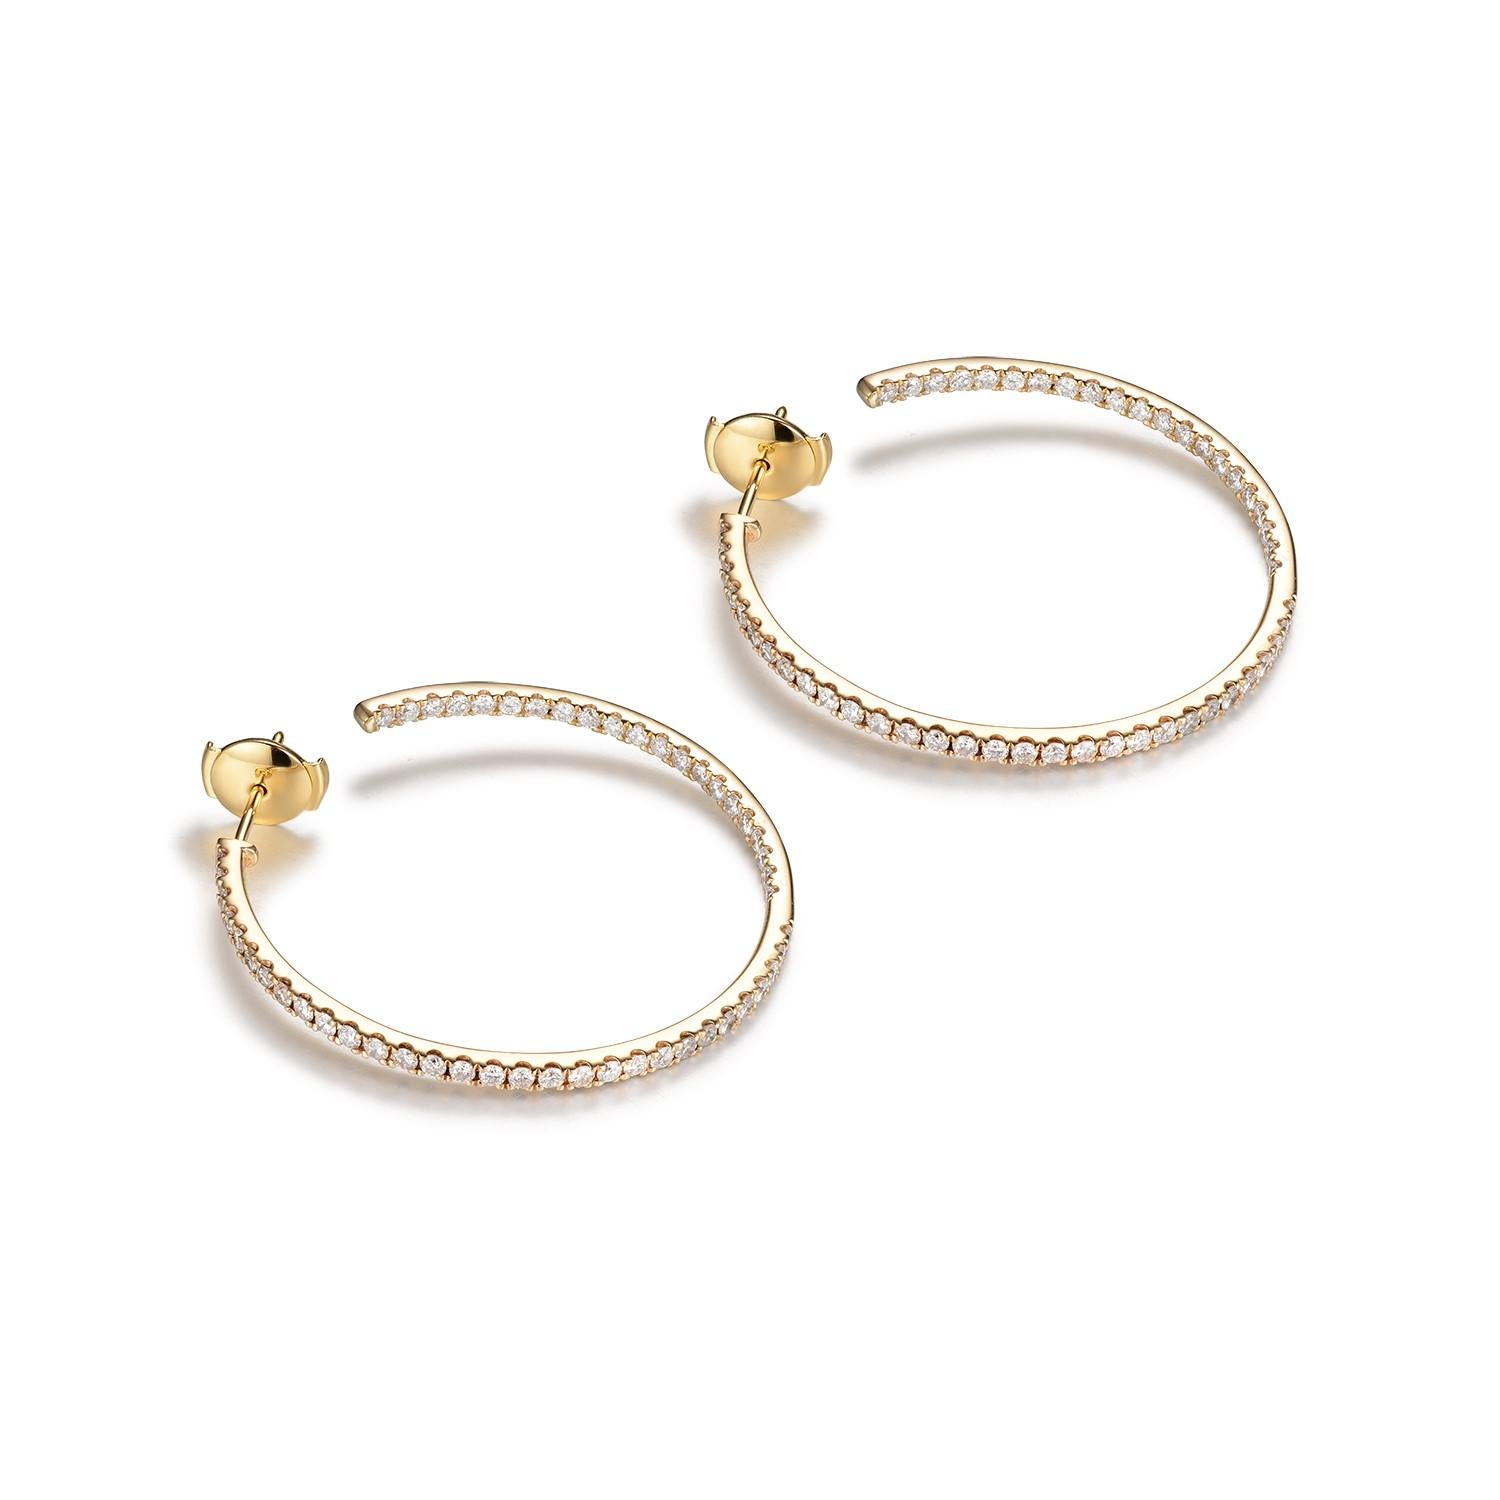 Diese eleganten Ohrringe sind aus 14 Karat Gelbgold gefertigt und bieten eine klassische und warme Ästhetik. Jeder Ohrring ist mit einer großzügigen Anordnung von Diamanten von insgesamt 2,09 Karat verziert, die den Ring in einer kontinuierlichen